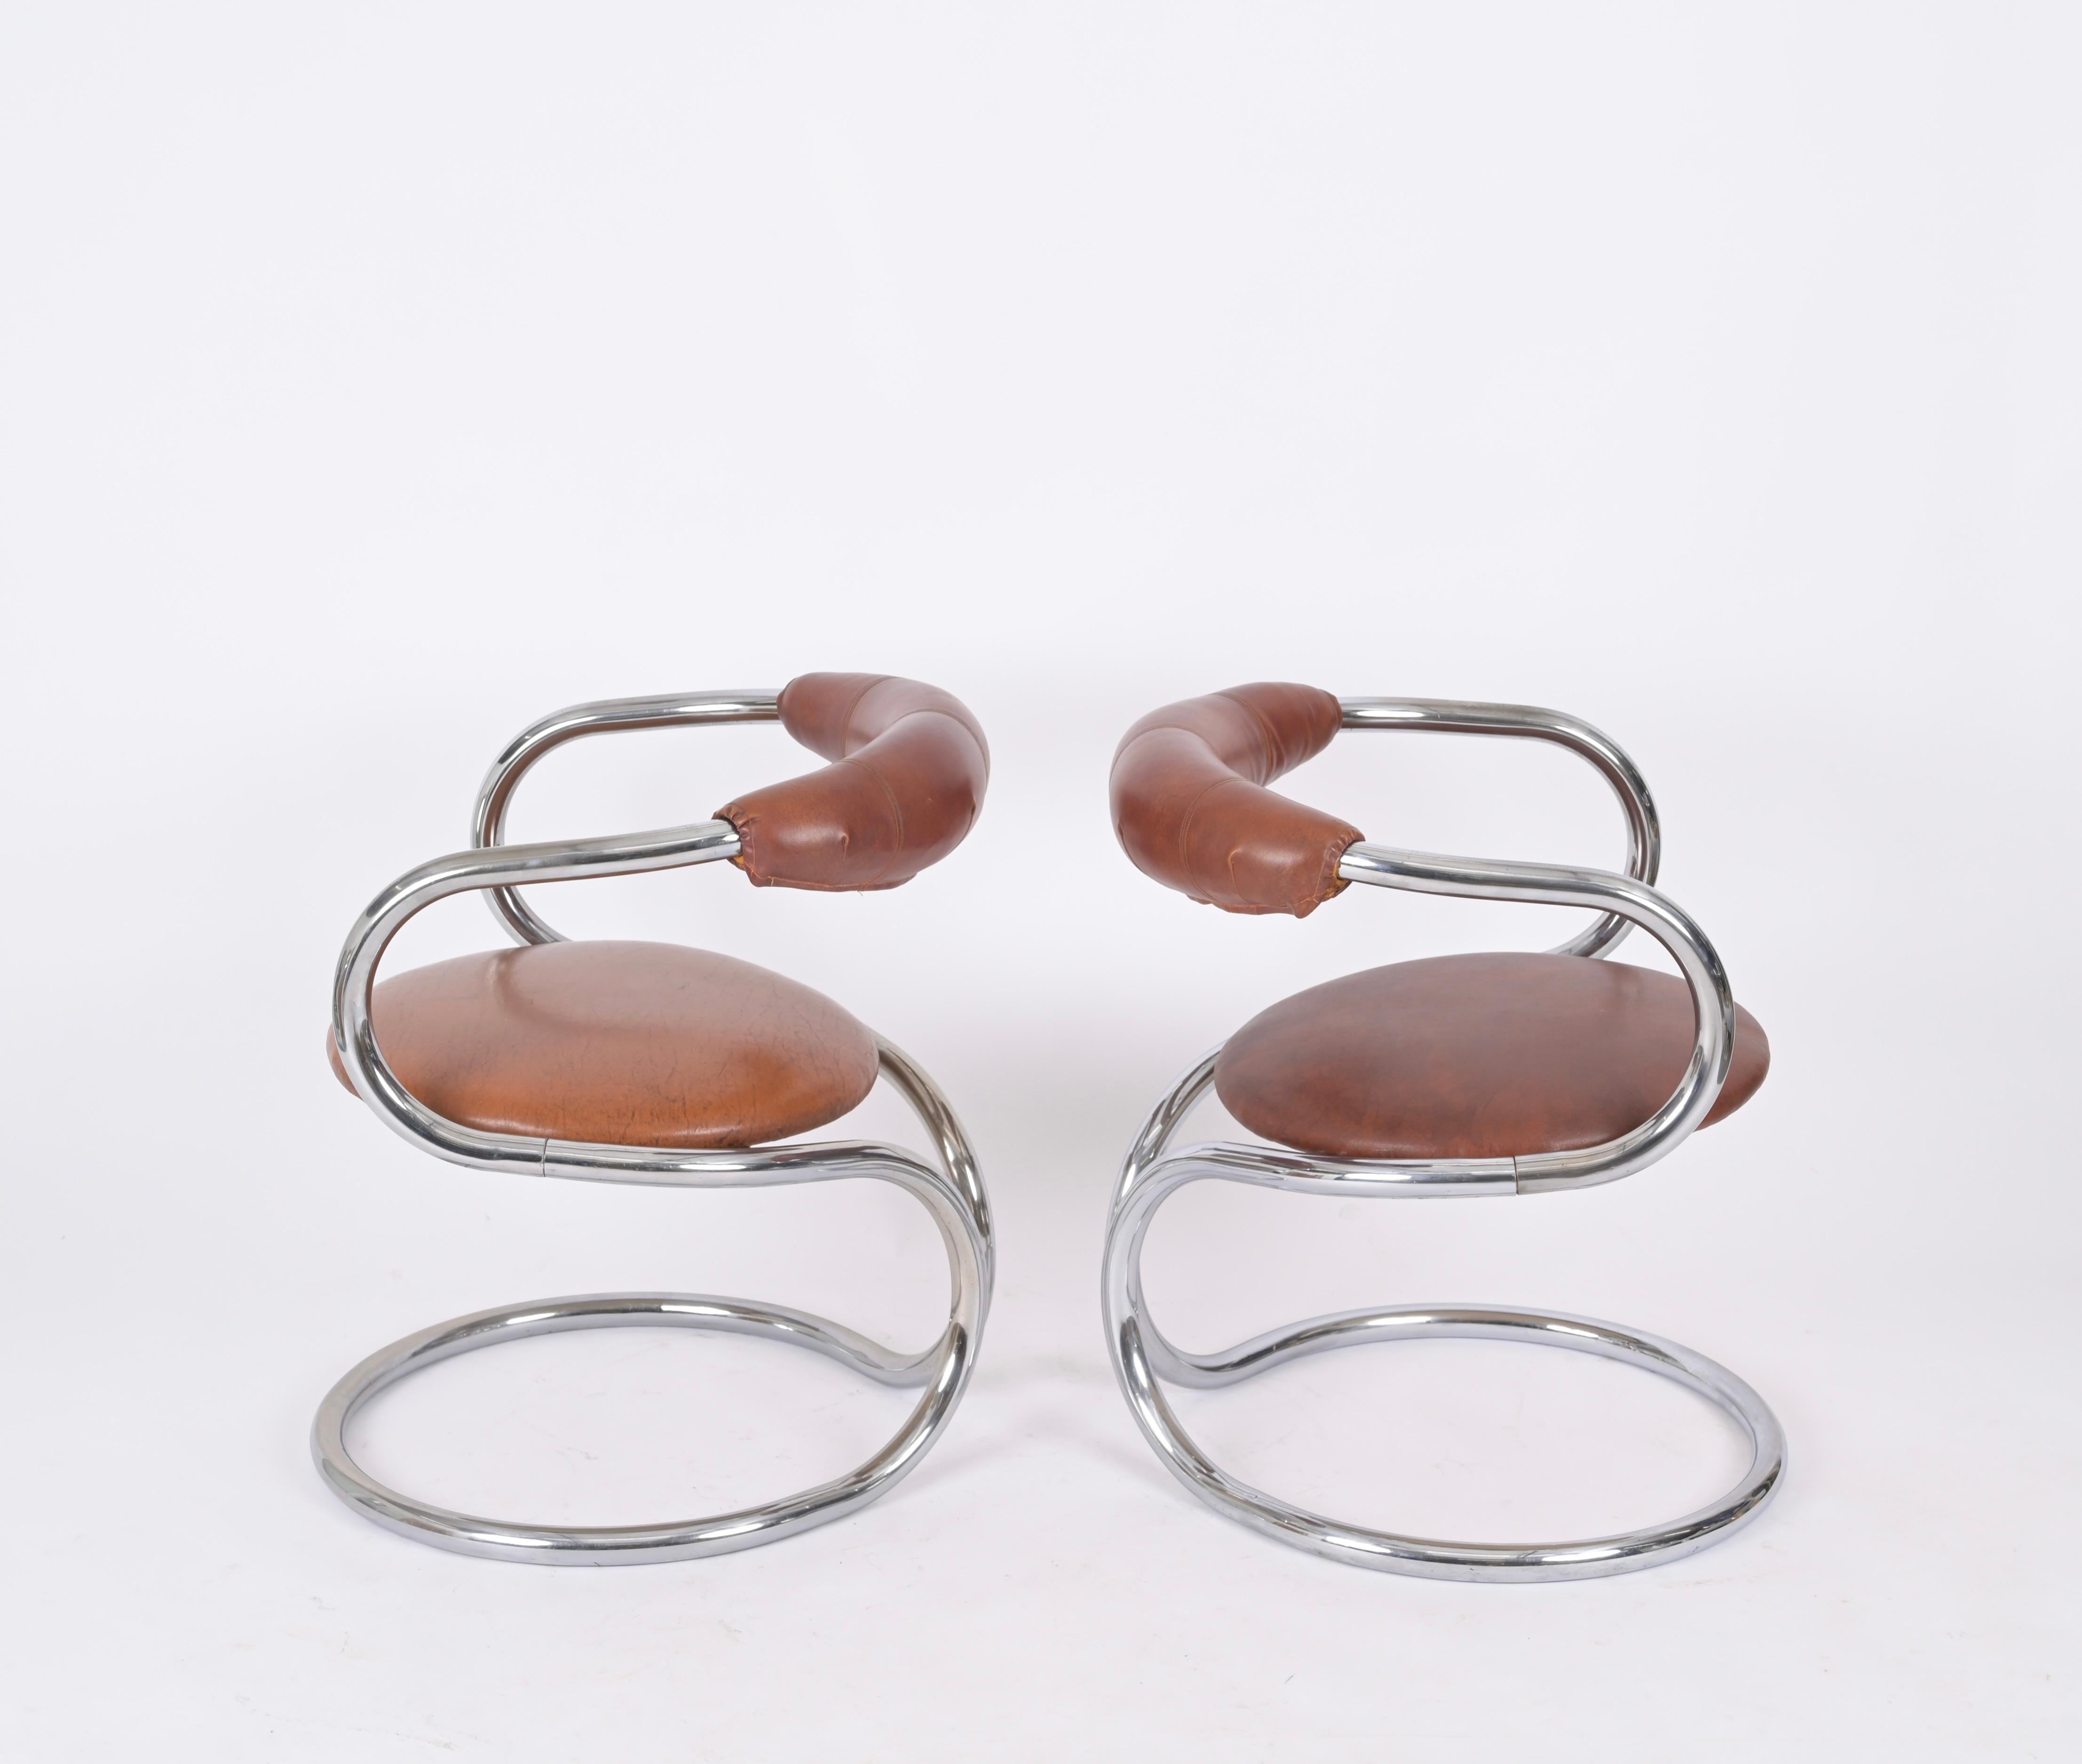 Wunderschönes Set aus zwei Stühlen aus verchromtem Stahl und braunem Leder. Giotto Stoppino entwarf diese Stühle in den 1970er Jahren in Italien.

Diese stilvollen Stühle haben eine wunderbare Rohrstruktur aus verchromtem Stahl mit einer runden,